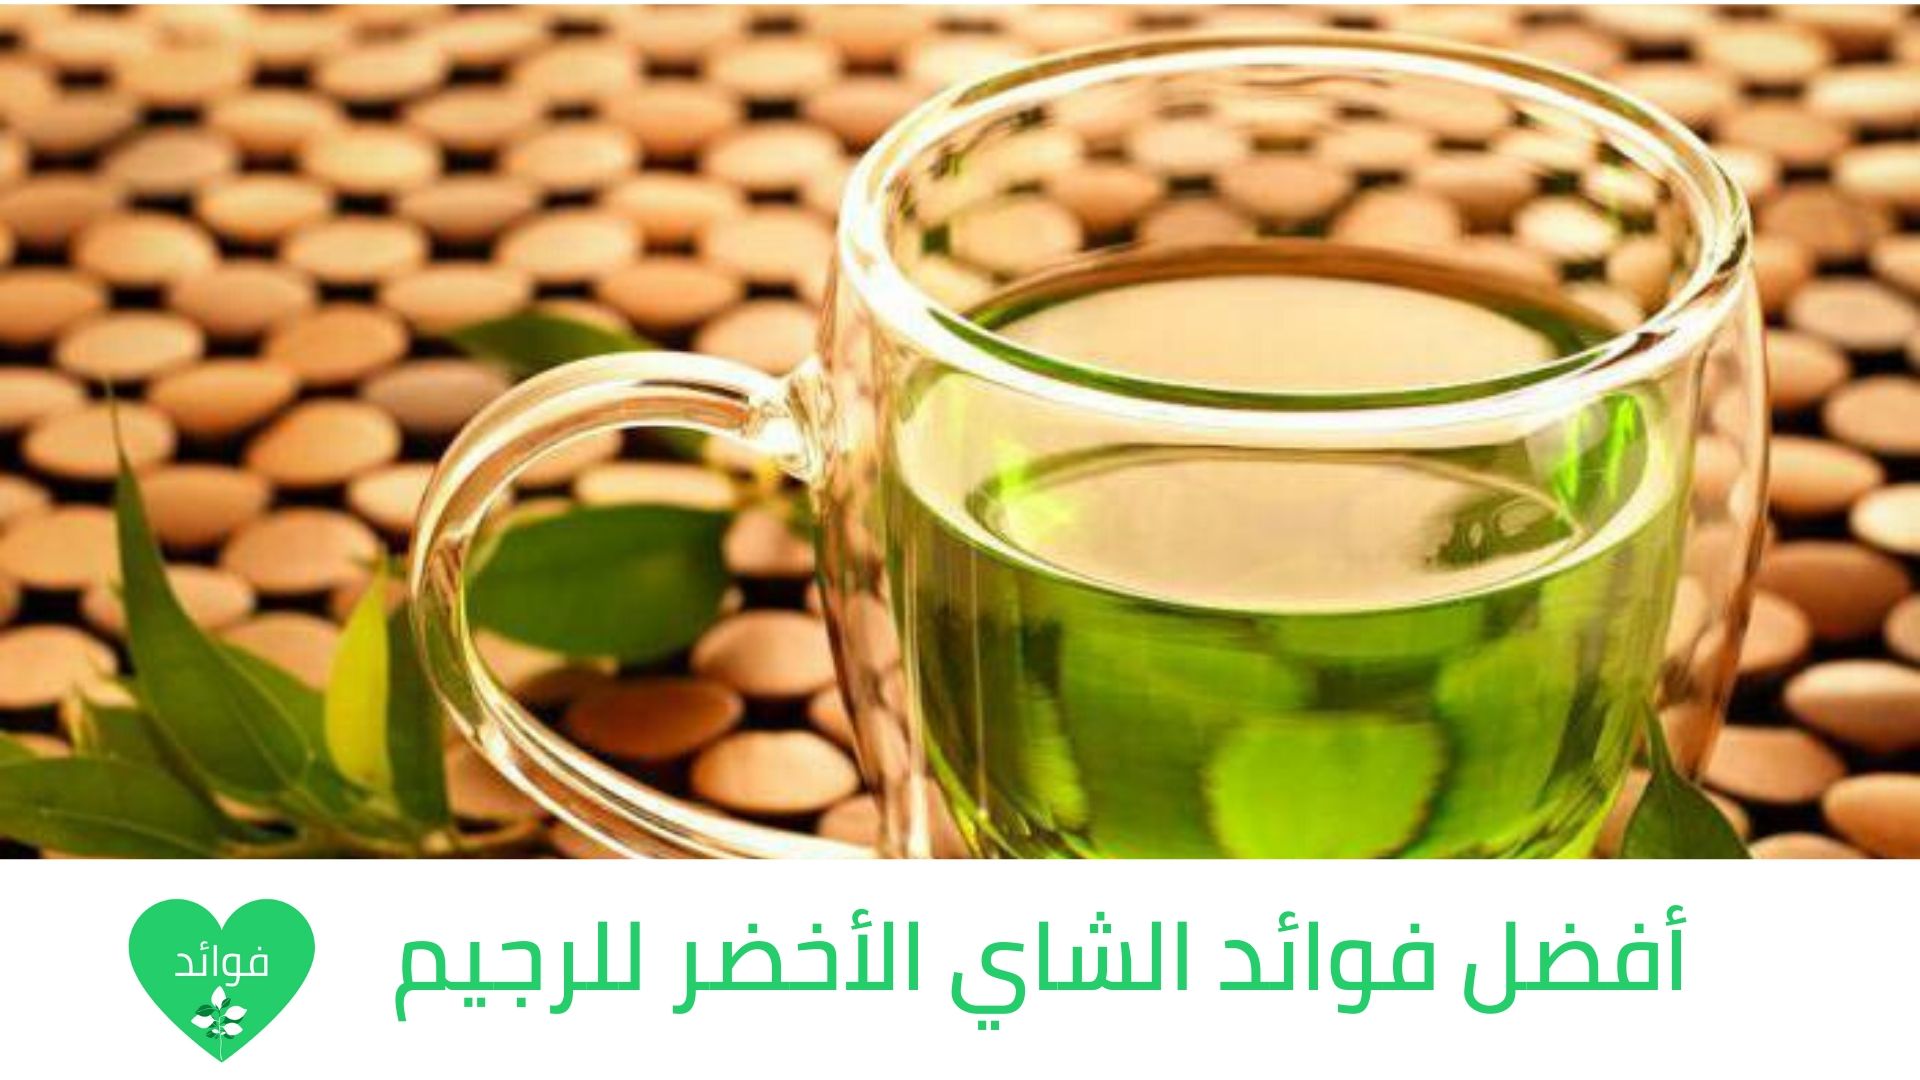 فوائد الشاي الأخضر على الريق ماذا يحدث لجسمك بعد 7 أيام فقط